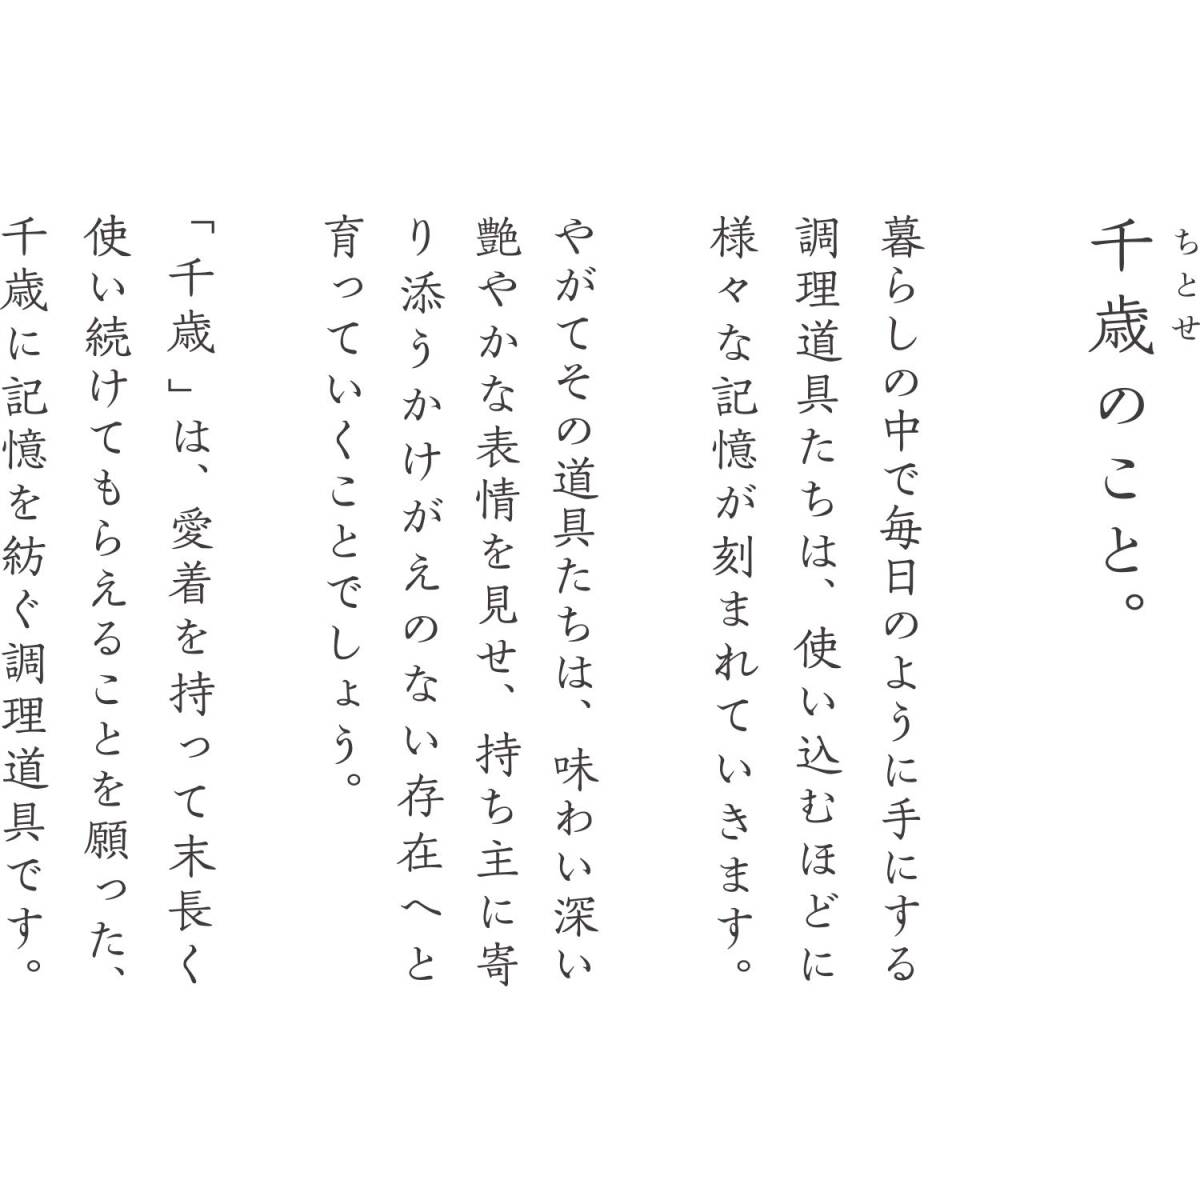 和平フレイズ(Wahei freiz) 日本製 ずっと使い続けたい 鉄 フライパン 16cm 木柄 IH対応 CS-006 千歳(ちとせ)_画像3